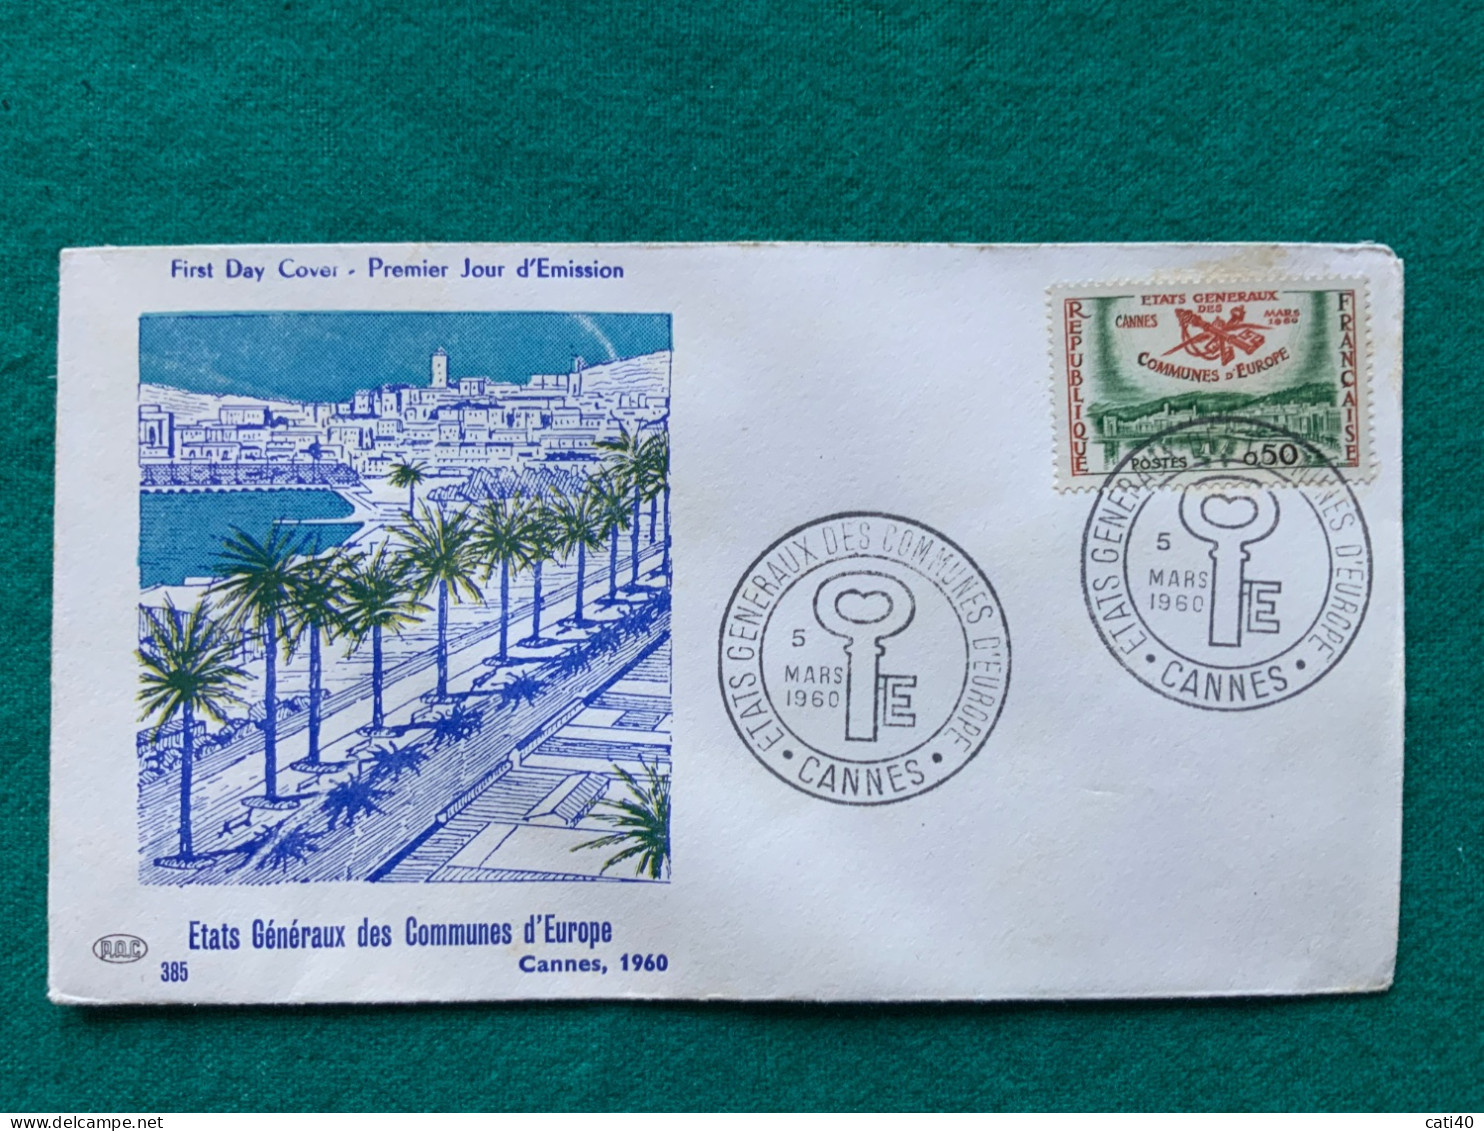 FRANCIA - CANNES - STATI GENERALI DEI COMUNI D'EUROPA    -   FDC 1960 - Covers & Documents